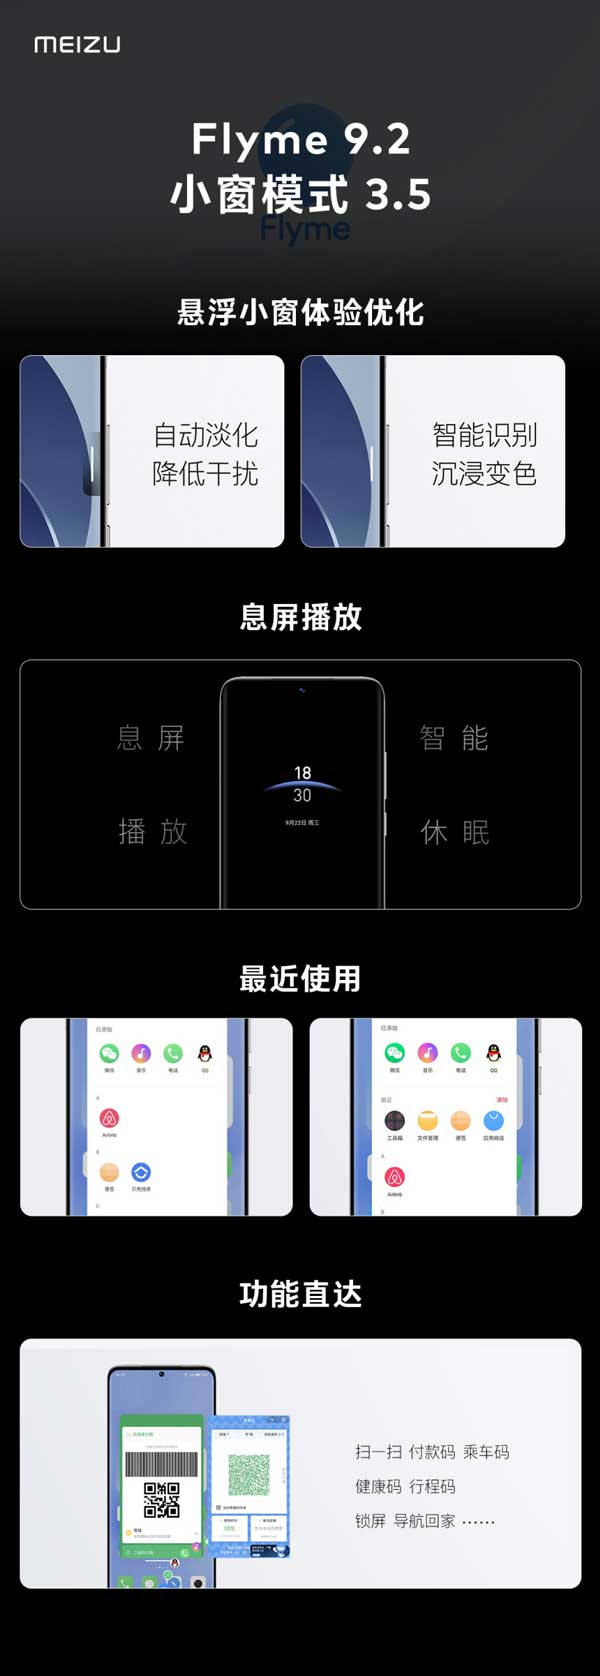 魅族全新旗舰魅族18S/18sPro发布，采用骁龙888+芯片